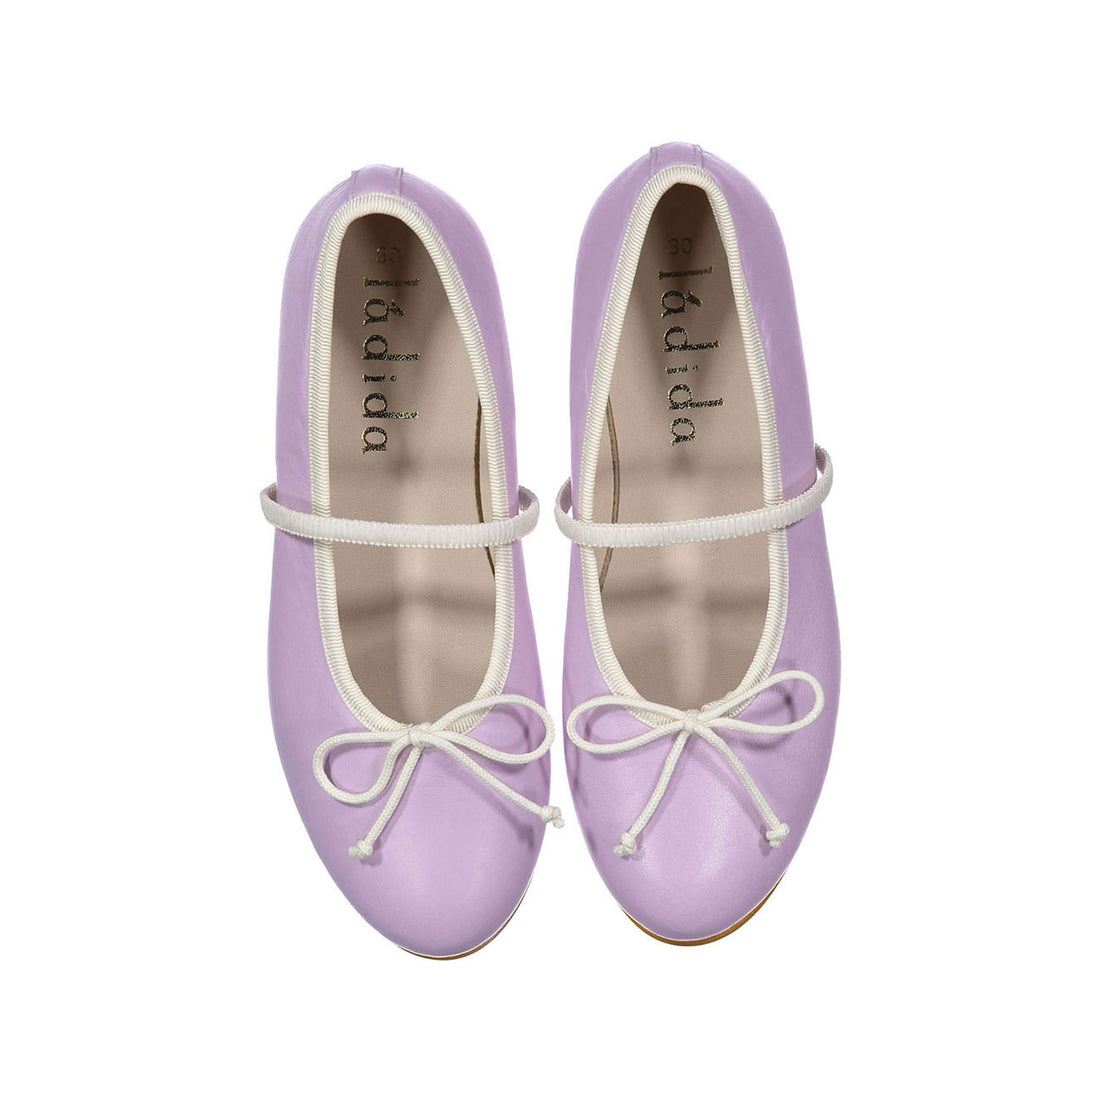 Ladida Lavender Strap Ballet Flats